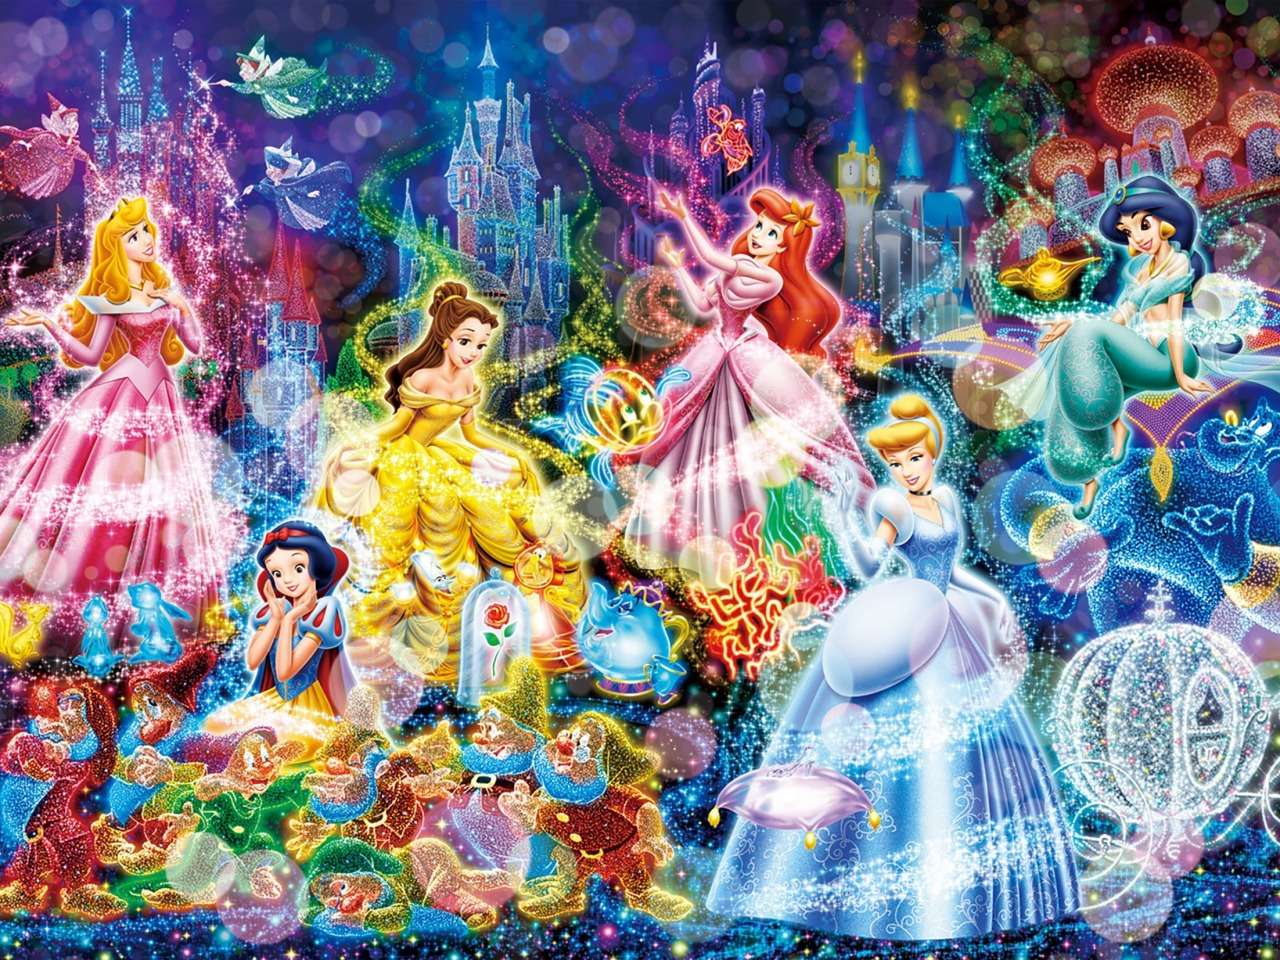 Μια παραμυθένια γιορτή της Disney, κάτι όμορφο παζλ online